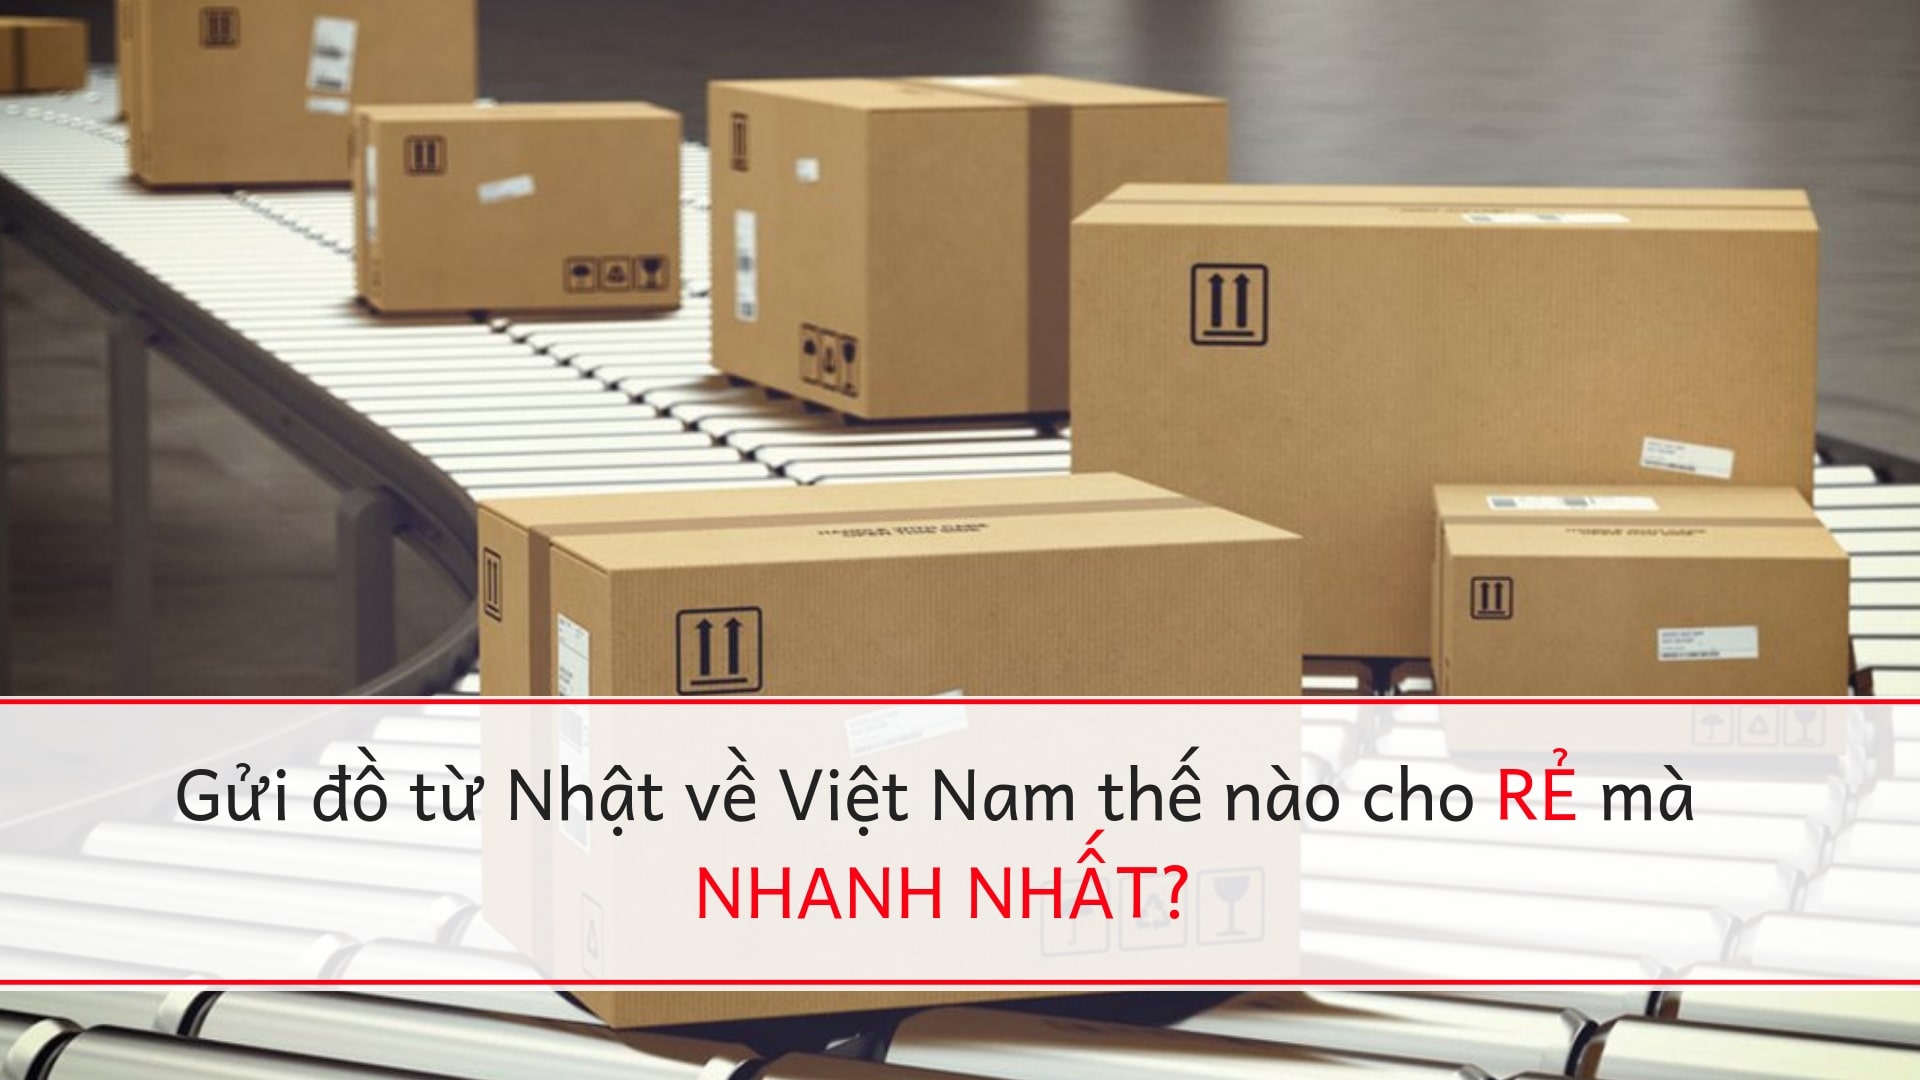 Mách TTS cách gửi đồ từ Nhật về Việt Nam vừa NHANH, vừa RẺ